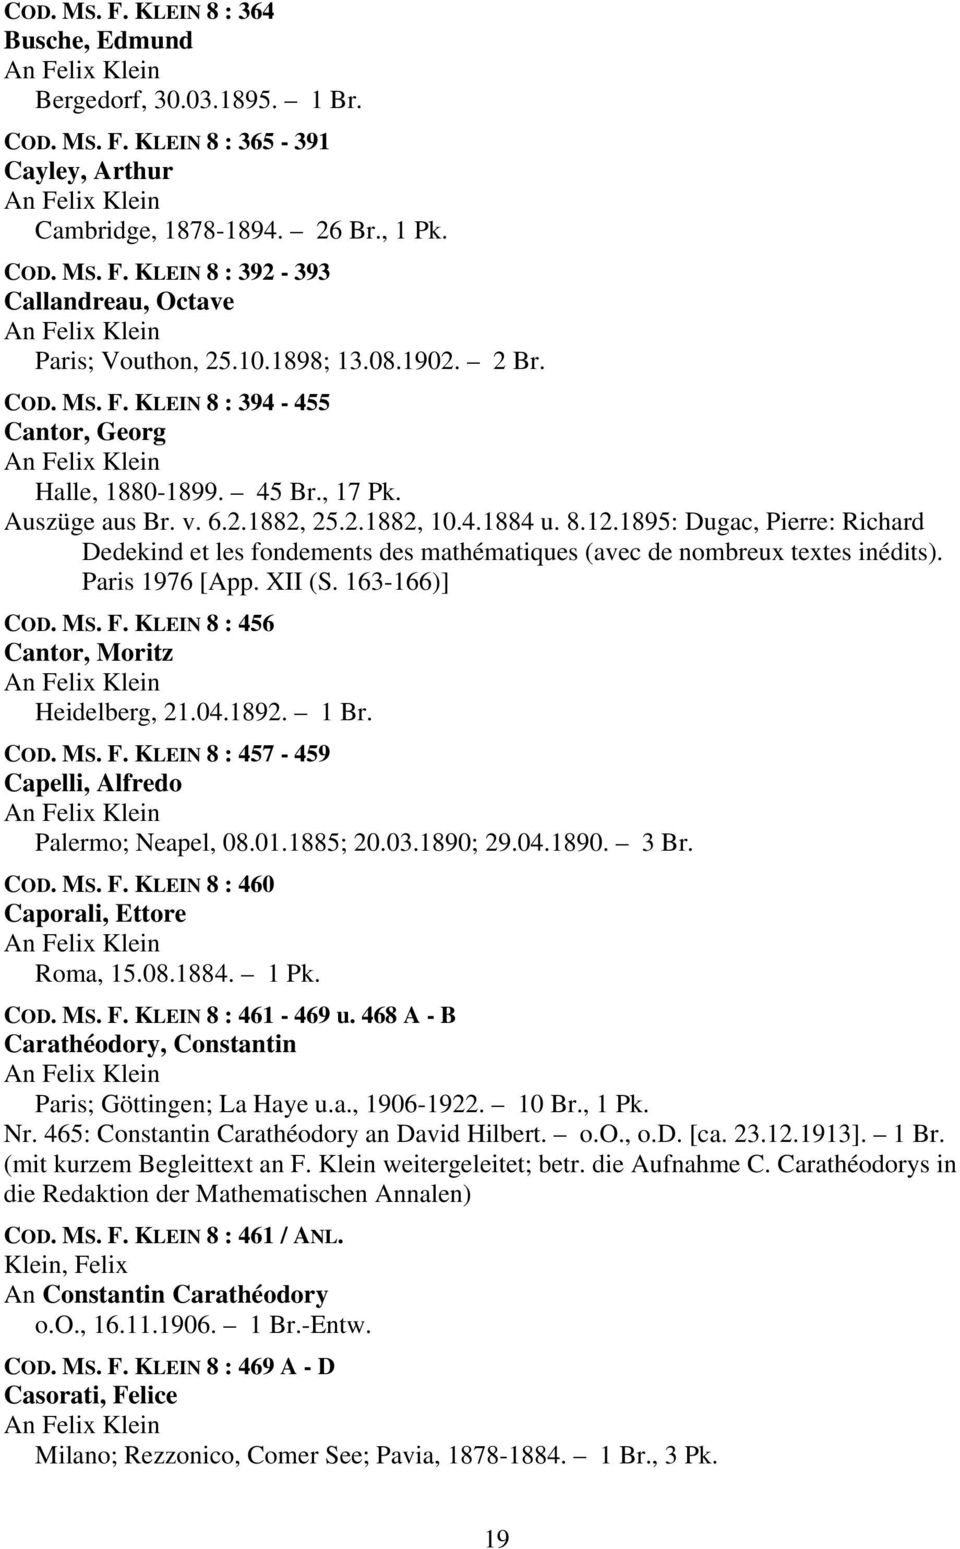 1895: Dugac, Pierre: Richard Dedekind et les fondements des mathématiques (avec de nombreux textes inédits). Paris 1976 [App. XII (S. 163-166)] COD. MS. F. KLEIN 8 : 456 Cantor, Moritz Heidelberg, 21.